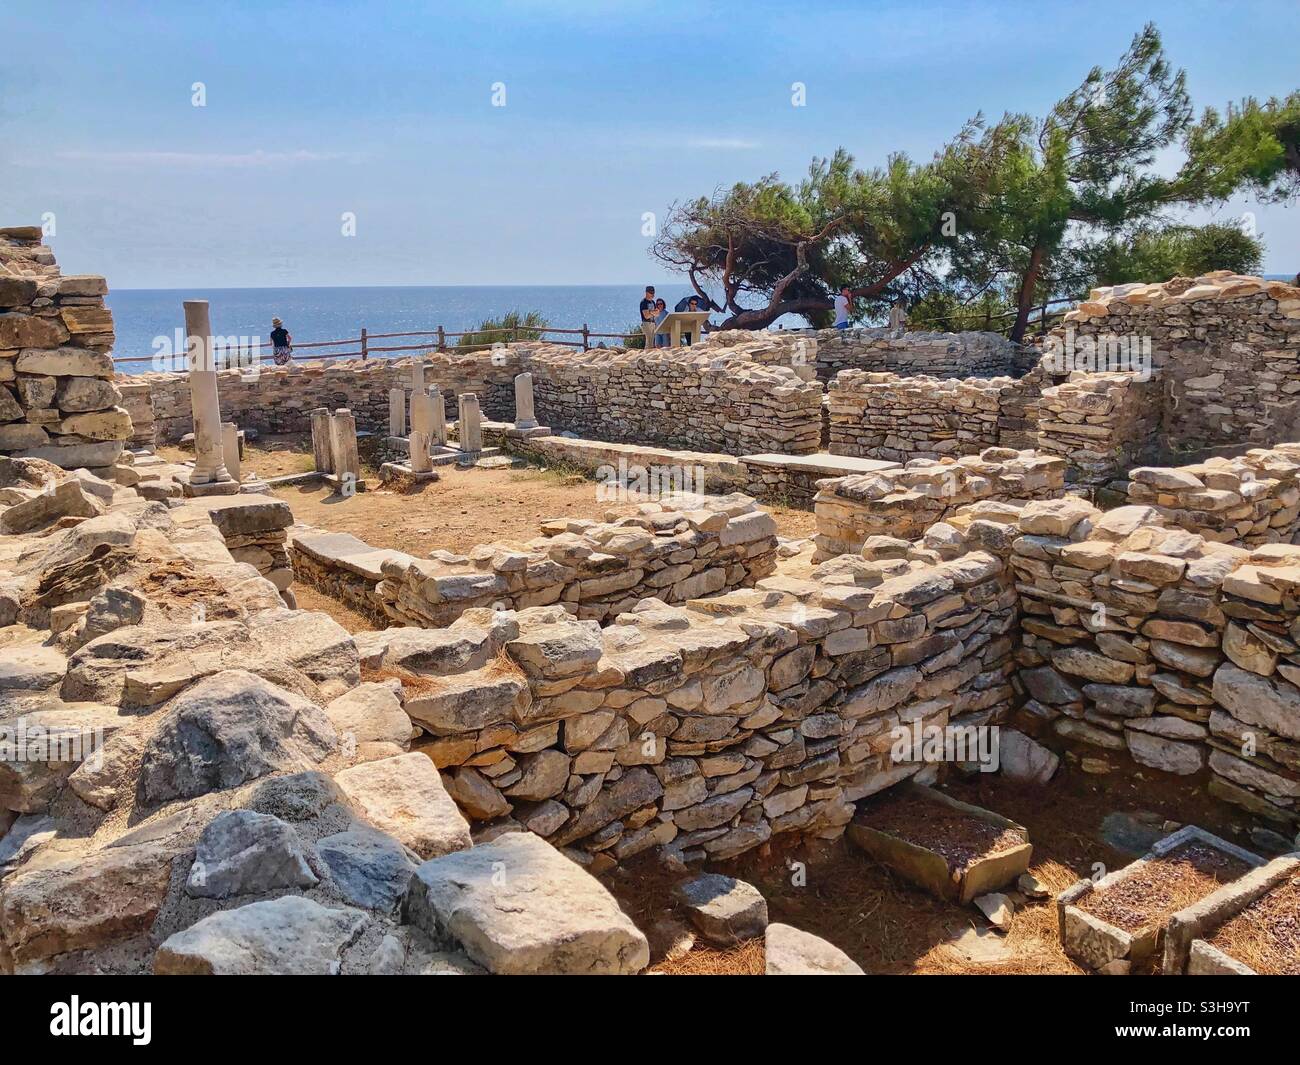 Sito archeologico con vista sul mare ad Aliki, a sud dell'isola di Thassos, Grecia. Foto Stock